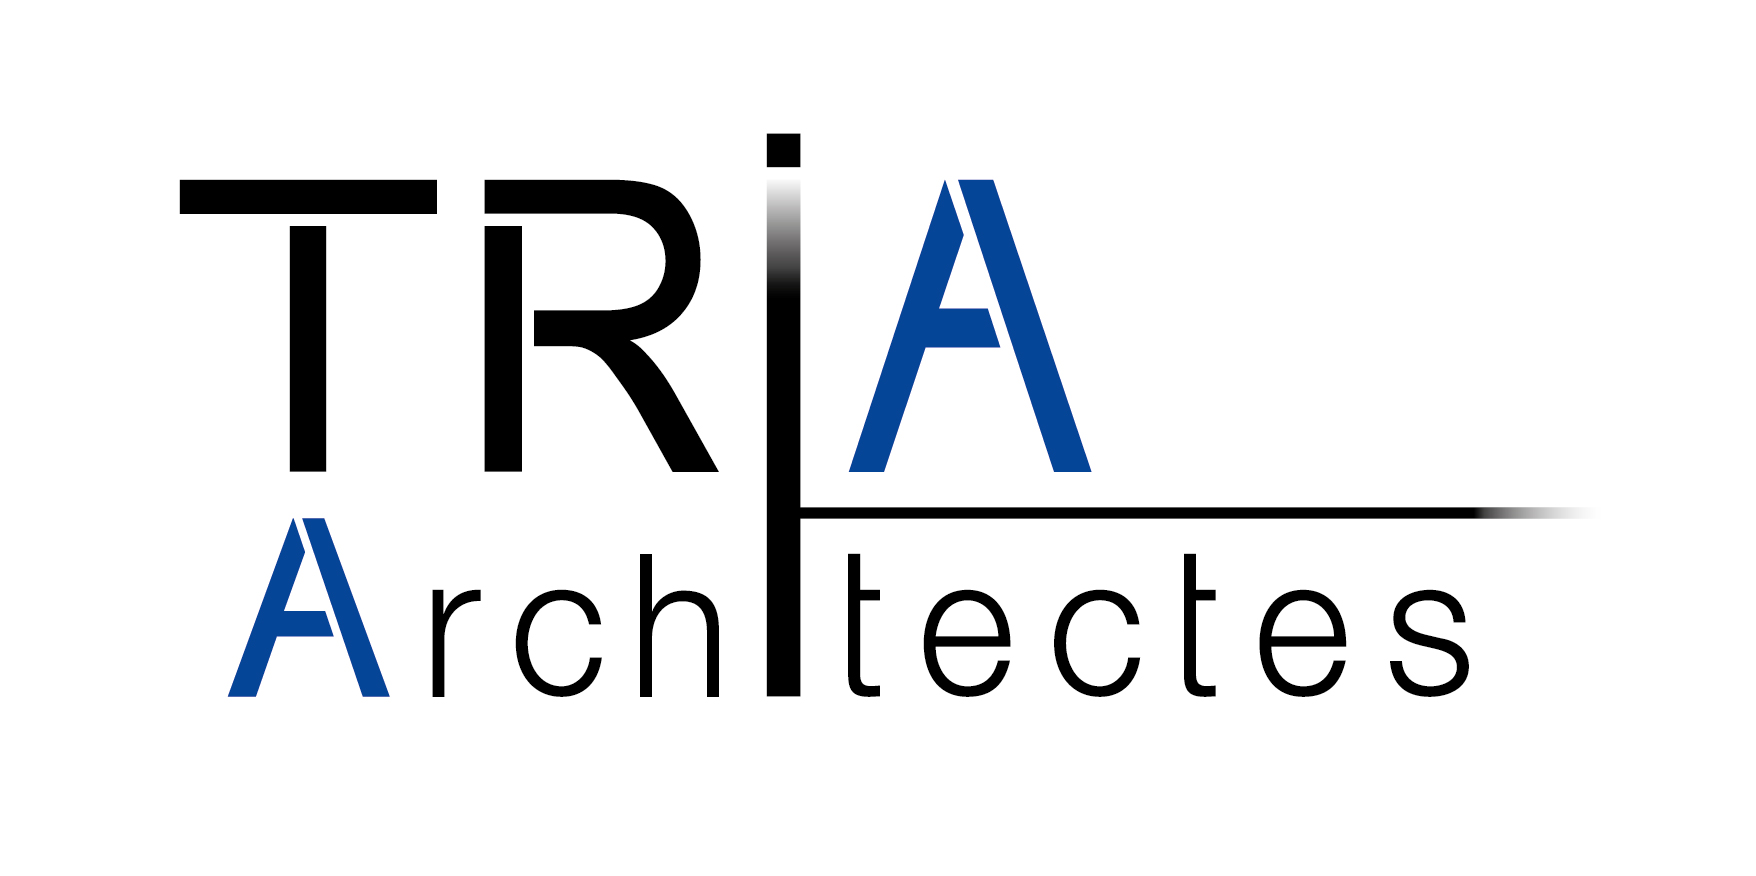 TRIA Architectes